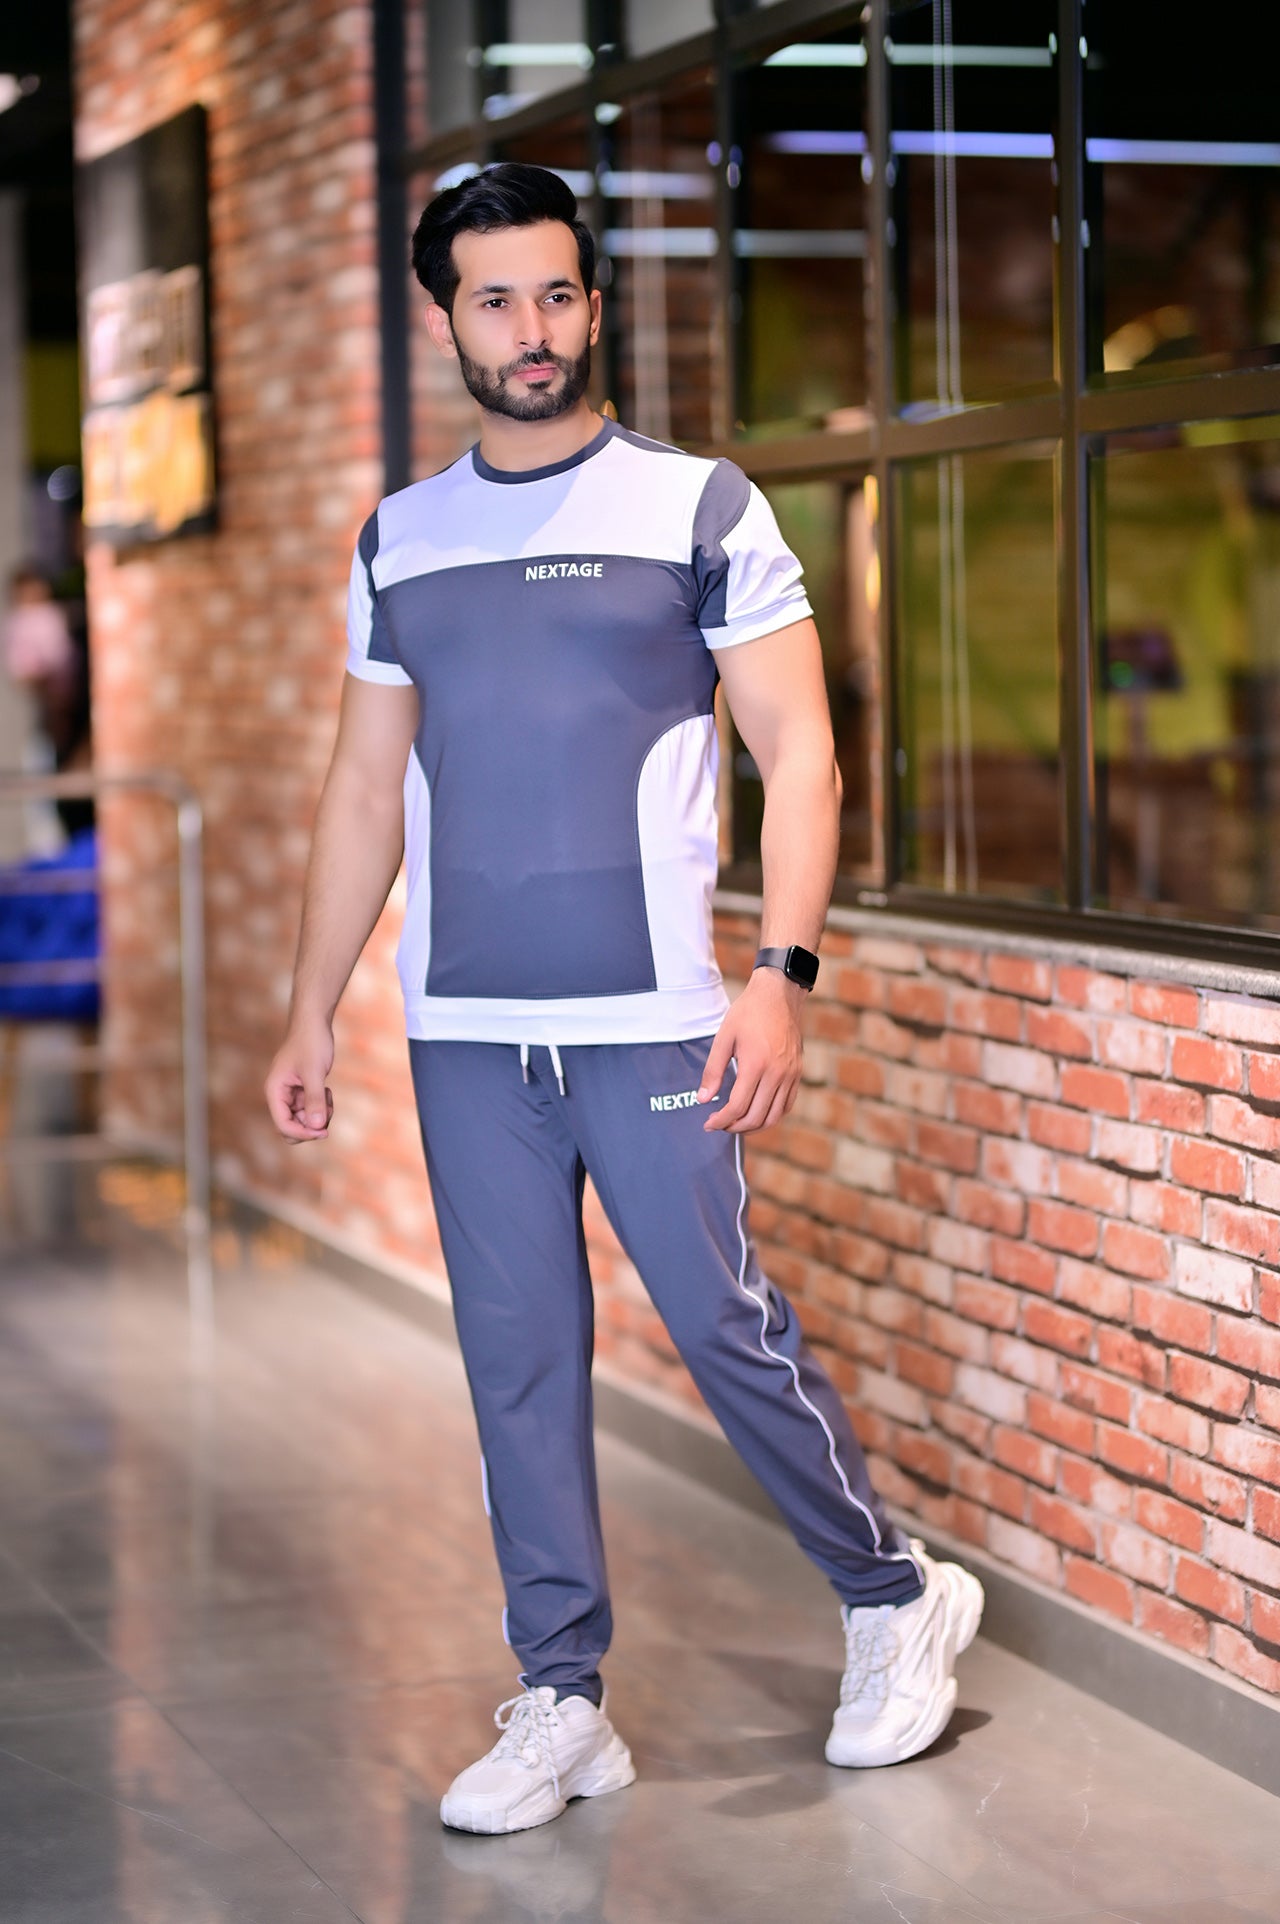 nextage sprotswear tracksuit brand in pakistan, sportswear for men,